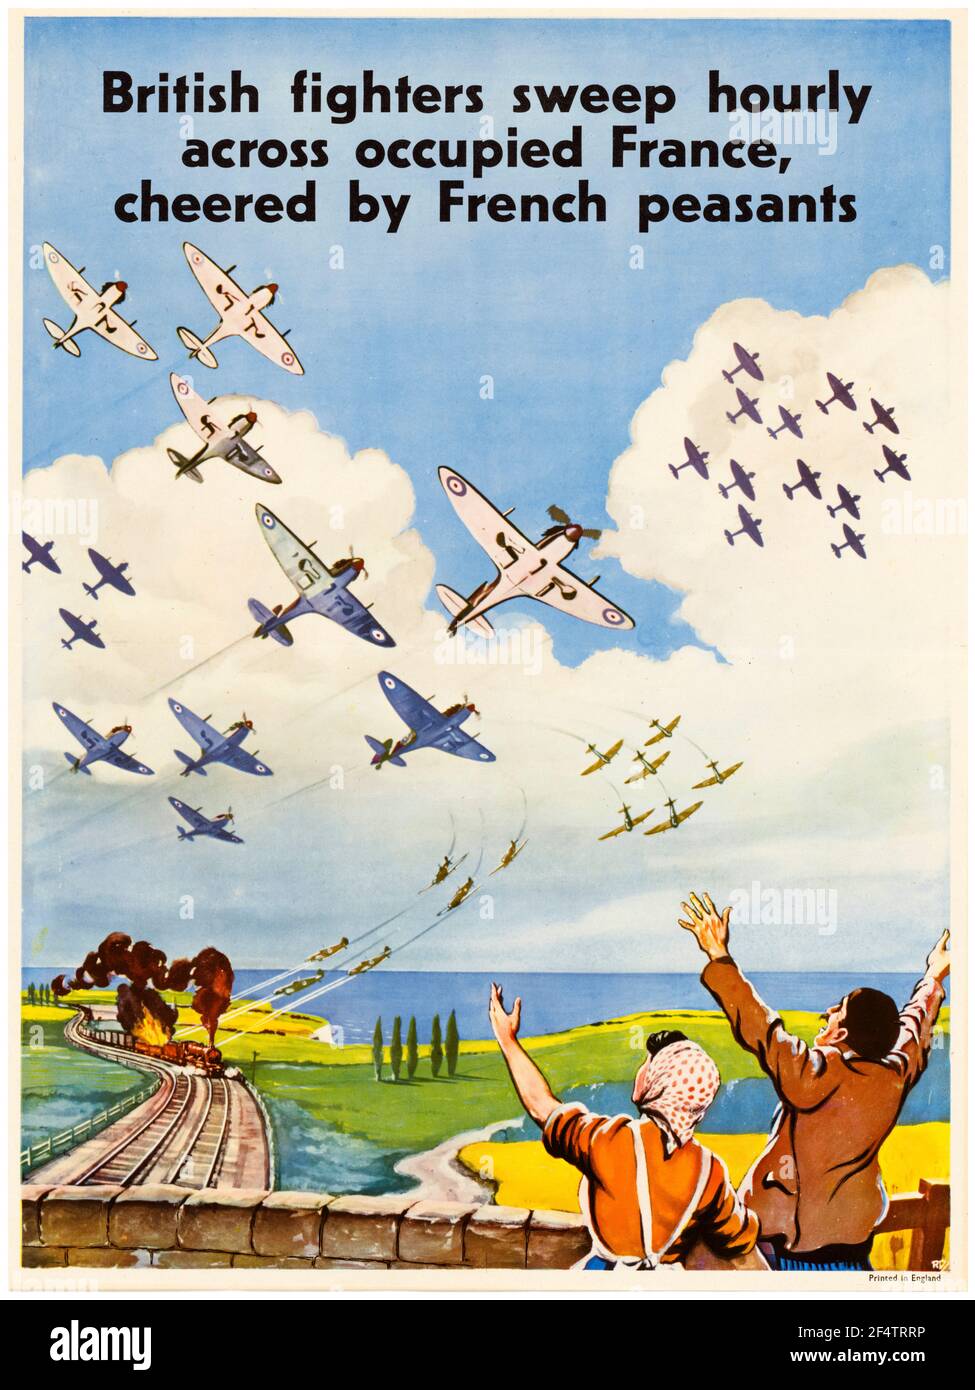 WW2, les combattants de la RAF britannique balayent horaire à travers la France occupée acclamé par les paysans français, (les combattants de la RAF attaquent un train), affiche motivationnelle, 1942-1945 Banque D'Images